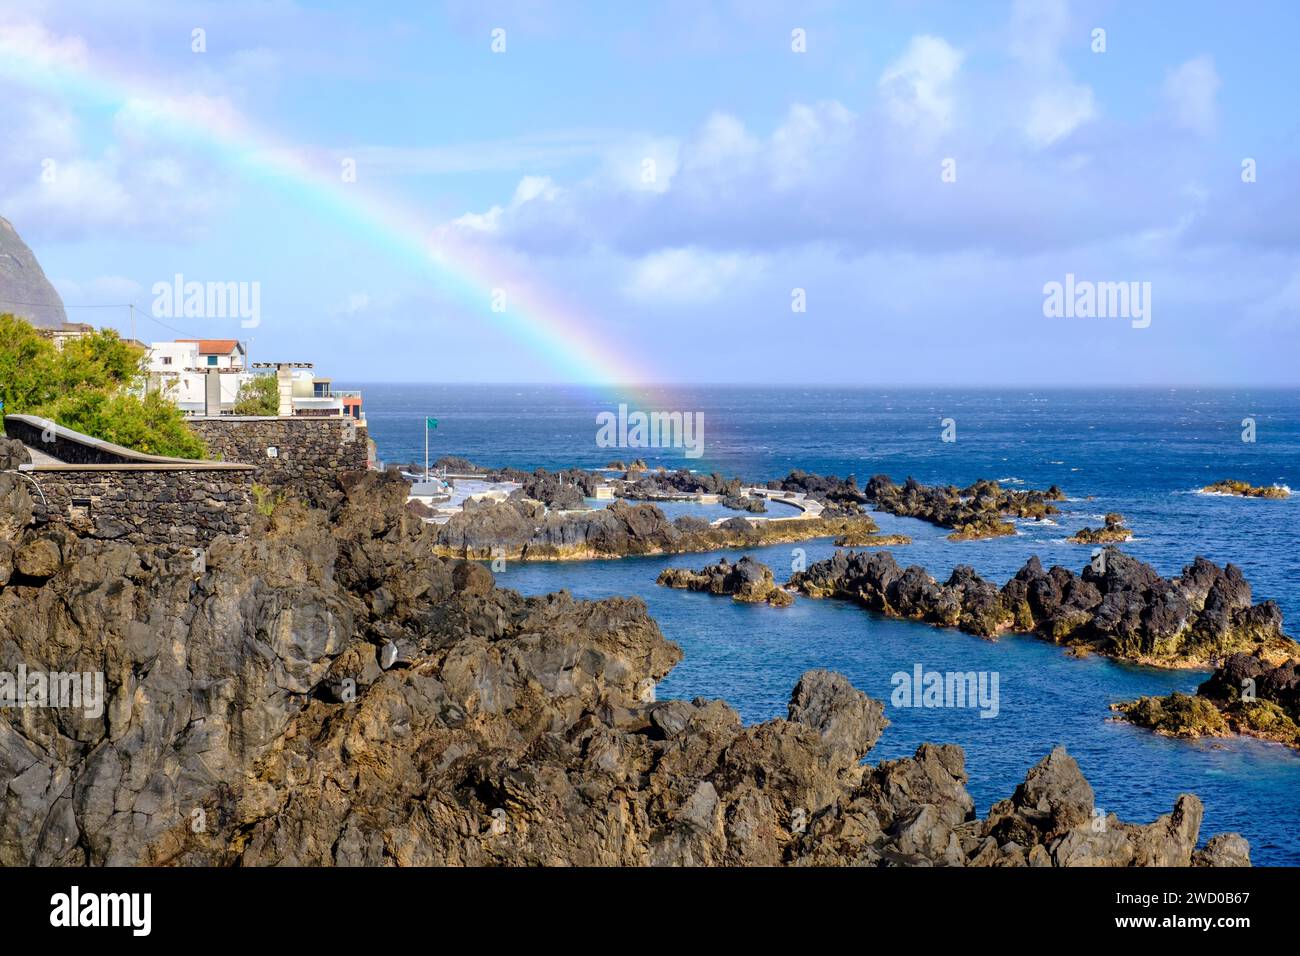 Piscines de lave naturelle paysage marin, arc-en-ciel sur Porto Moniz piscine de marée océanique, piscine de mer, côte rocheuse nord de l'île de Madère, Portugal Banque D'Images